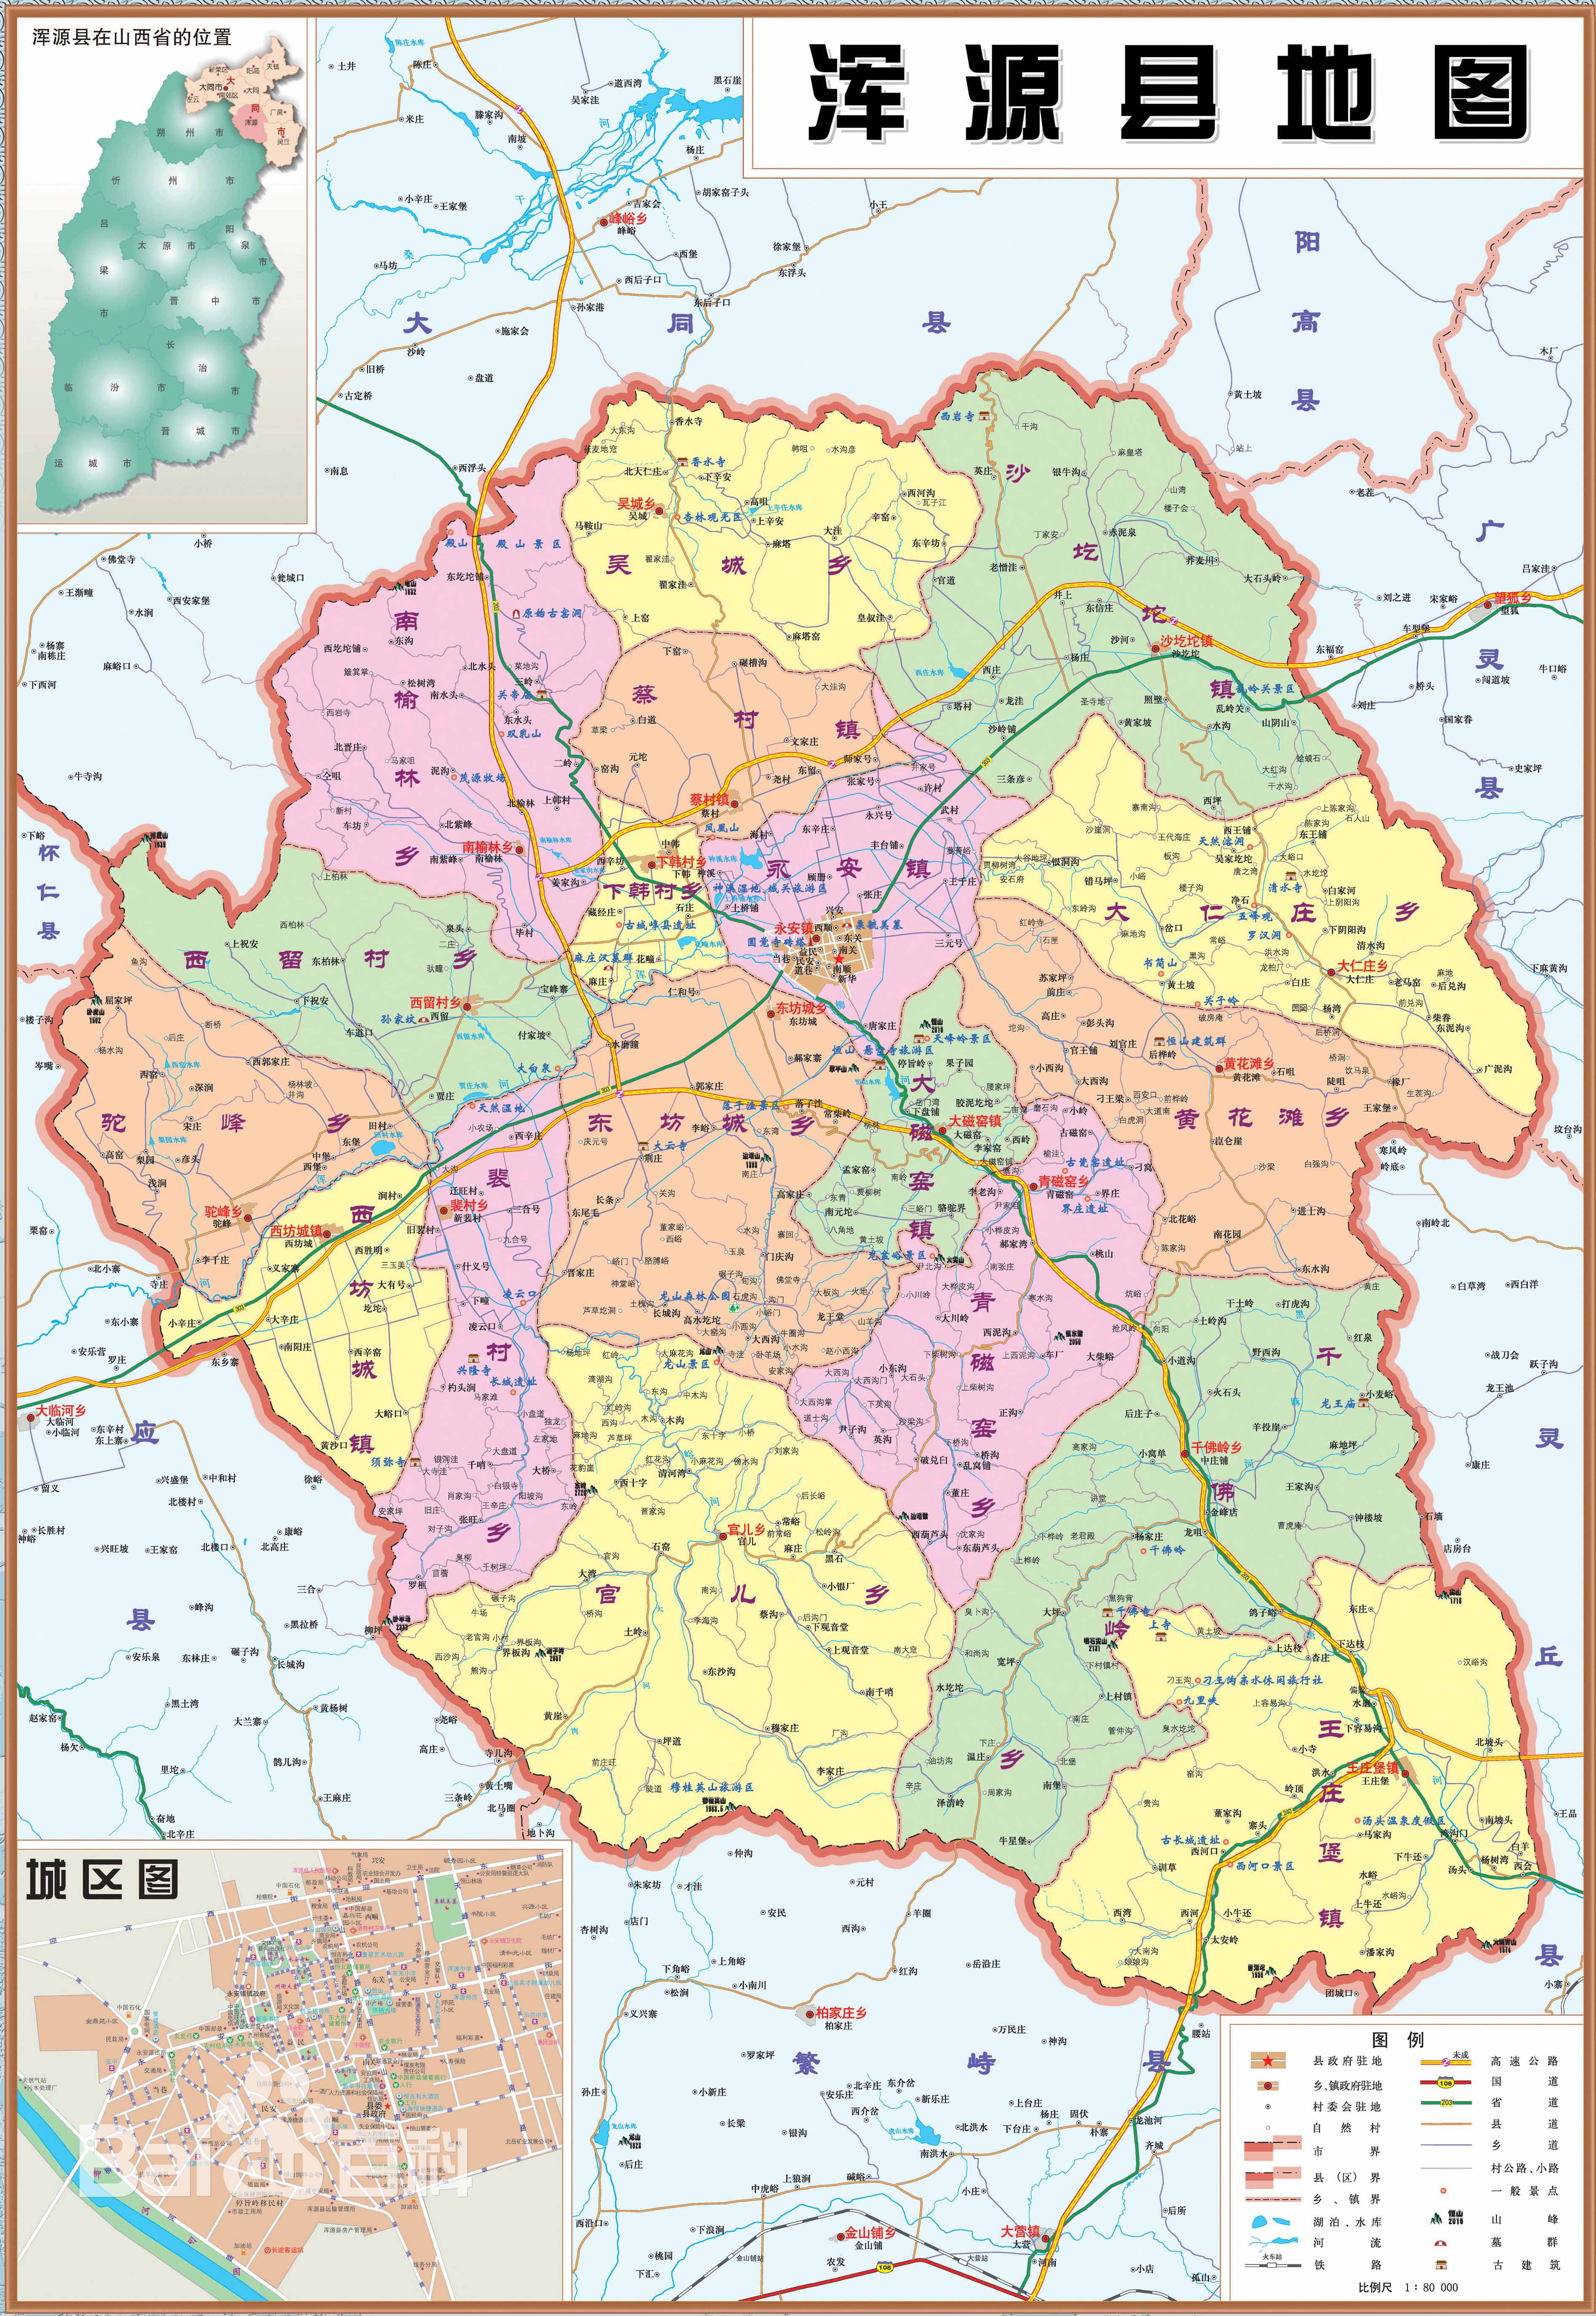 山西大同介绍分为10个地区的山西省第二大城市